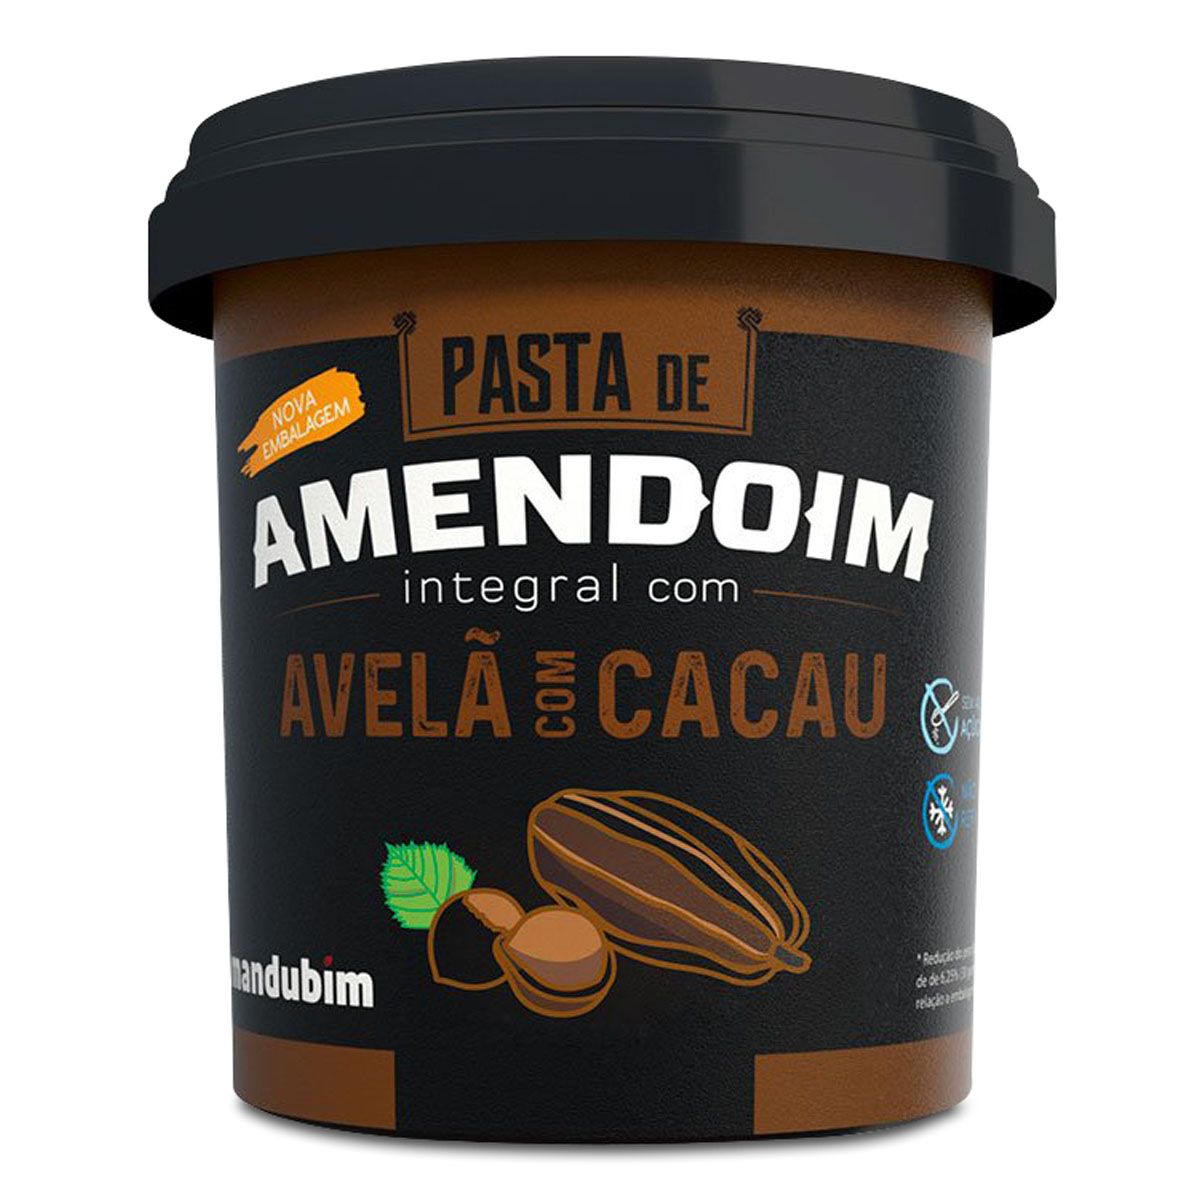 Pasta de Amendoim Integral c/ Avelã com Cacau 450g Mandubim